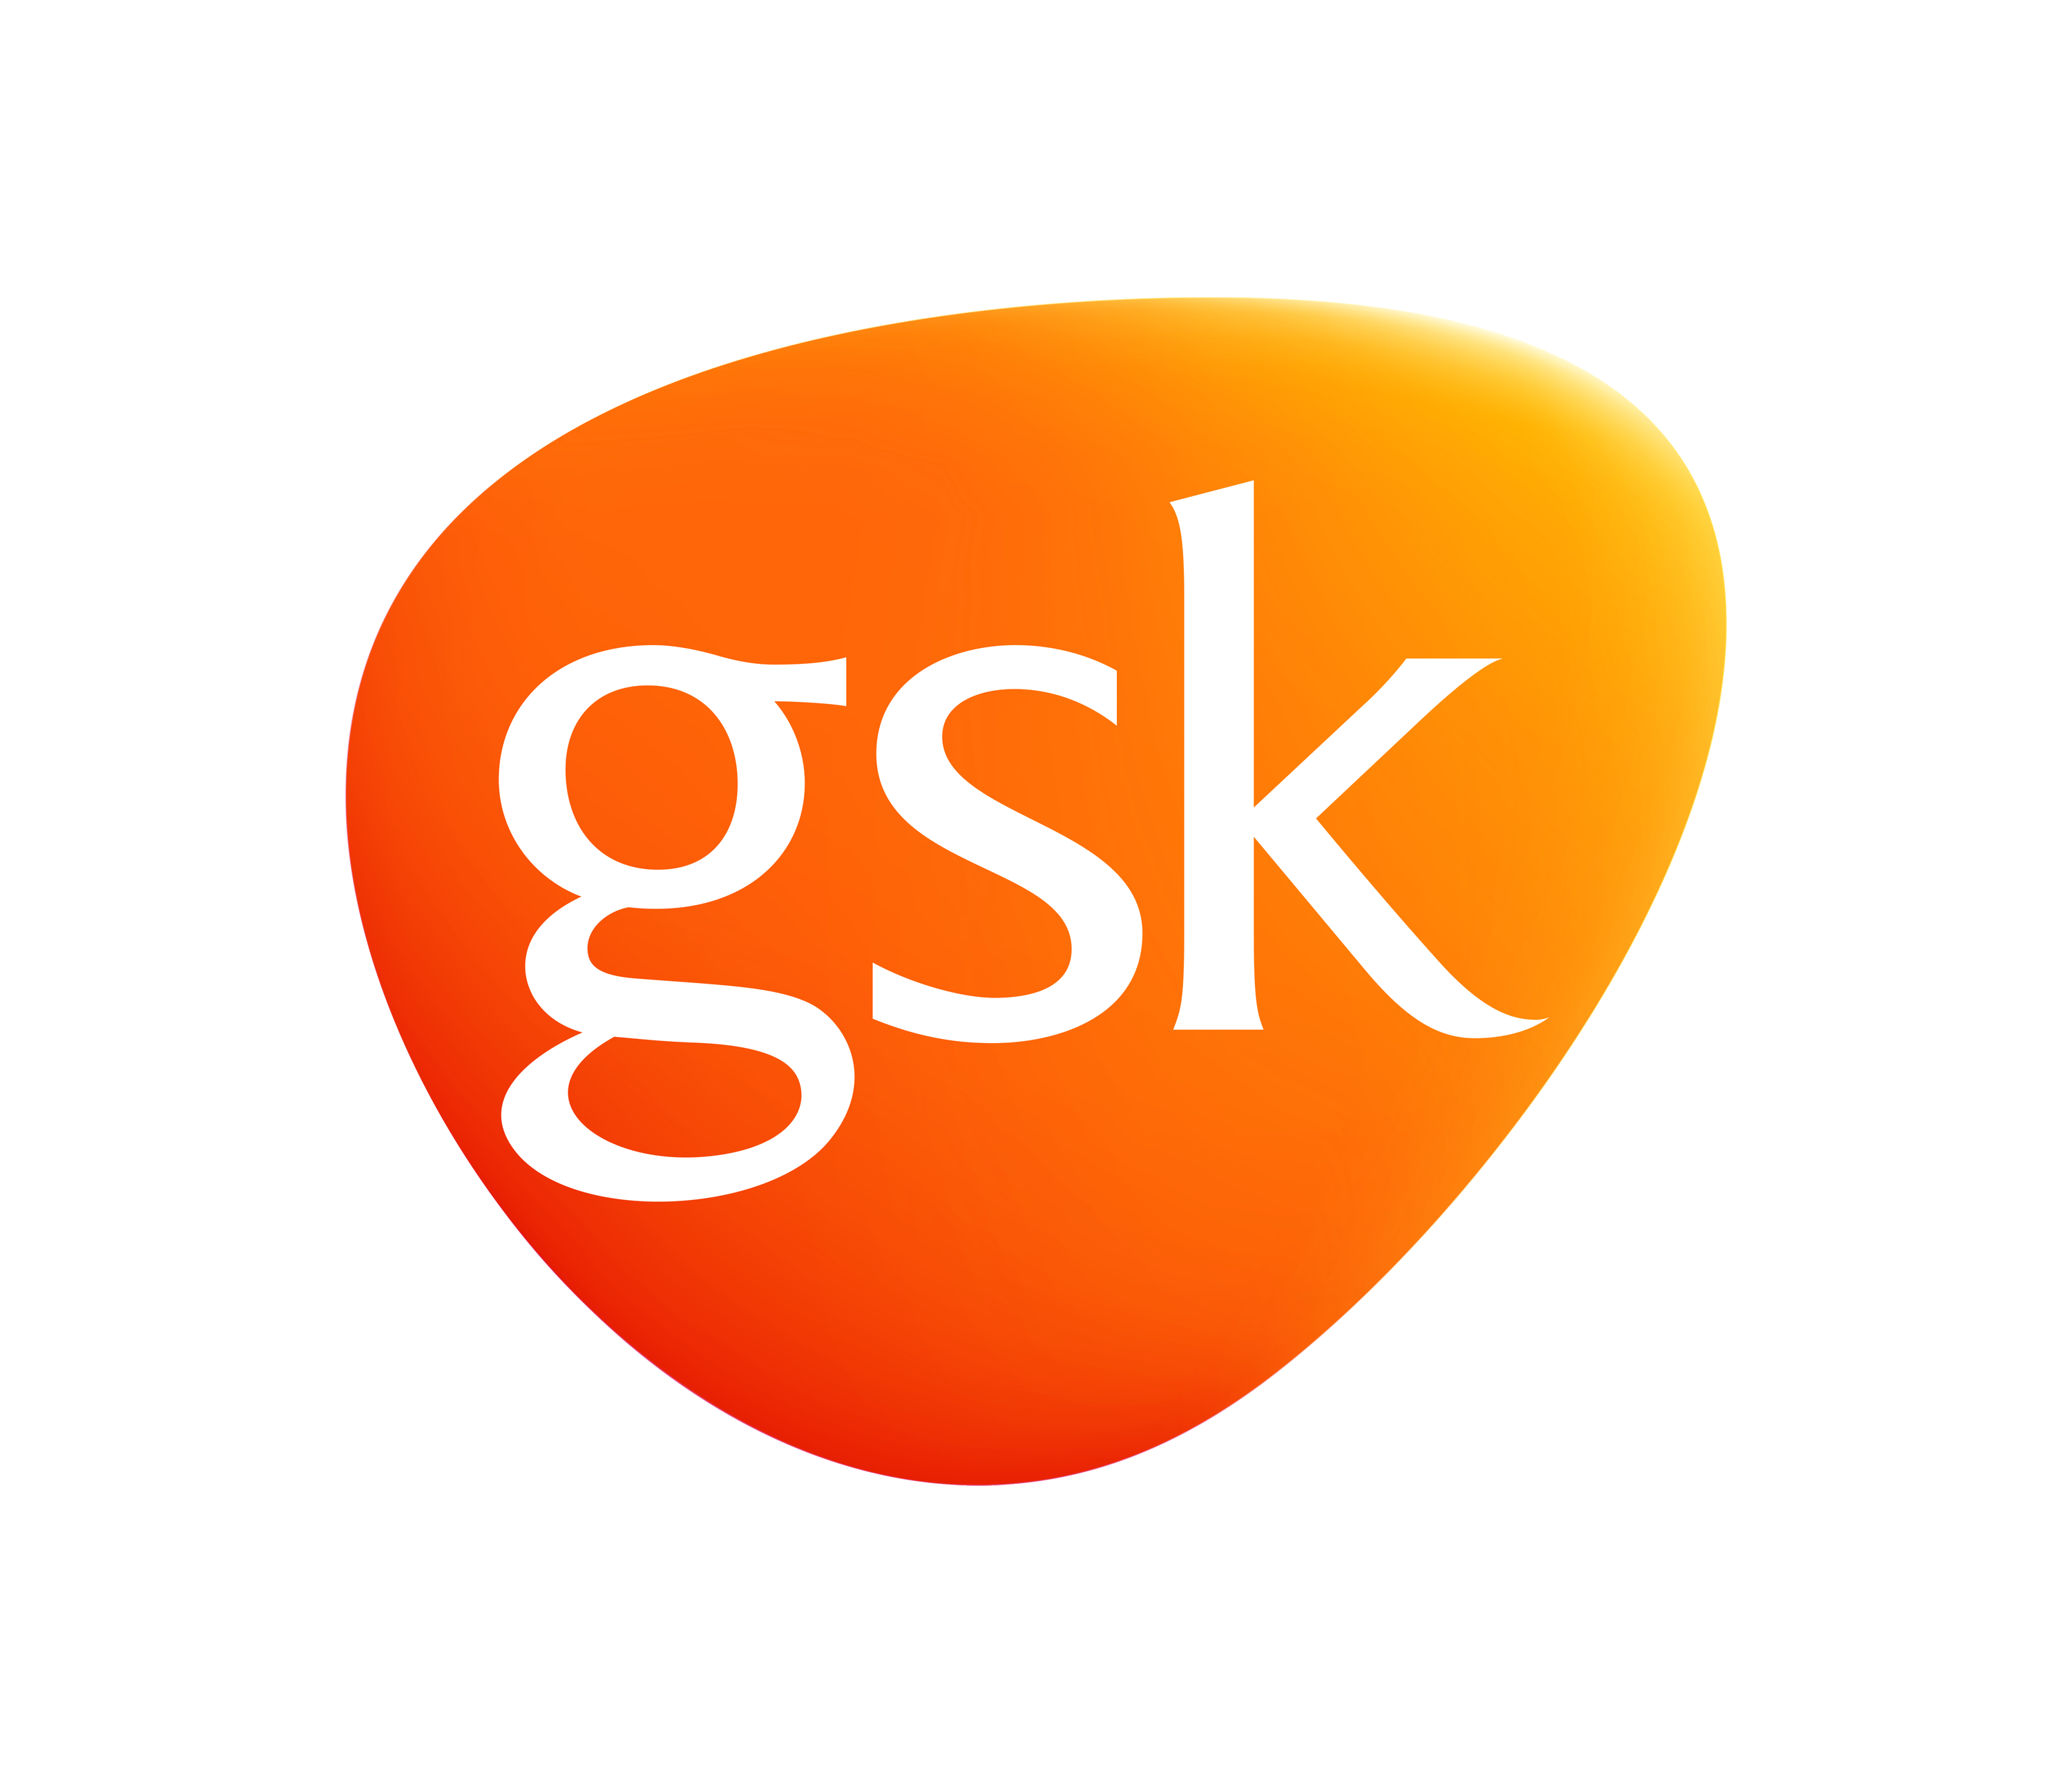 GSK_L_RGB.pngdigital